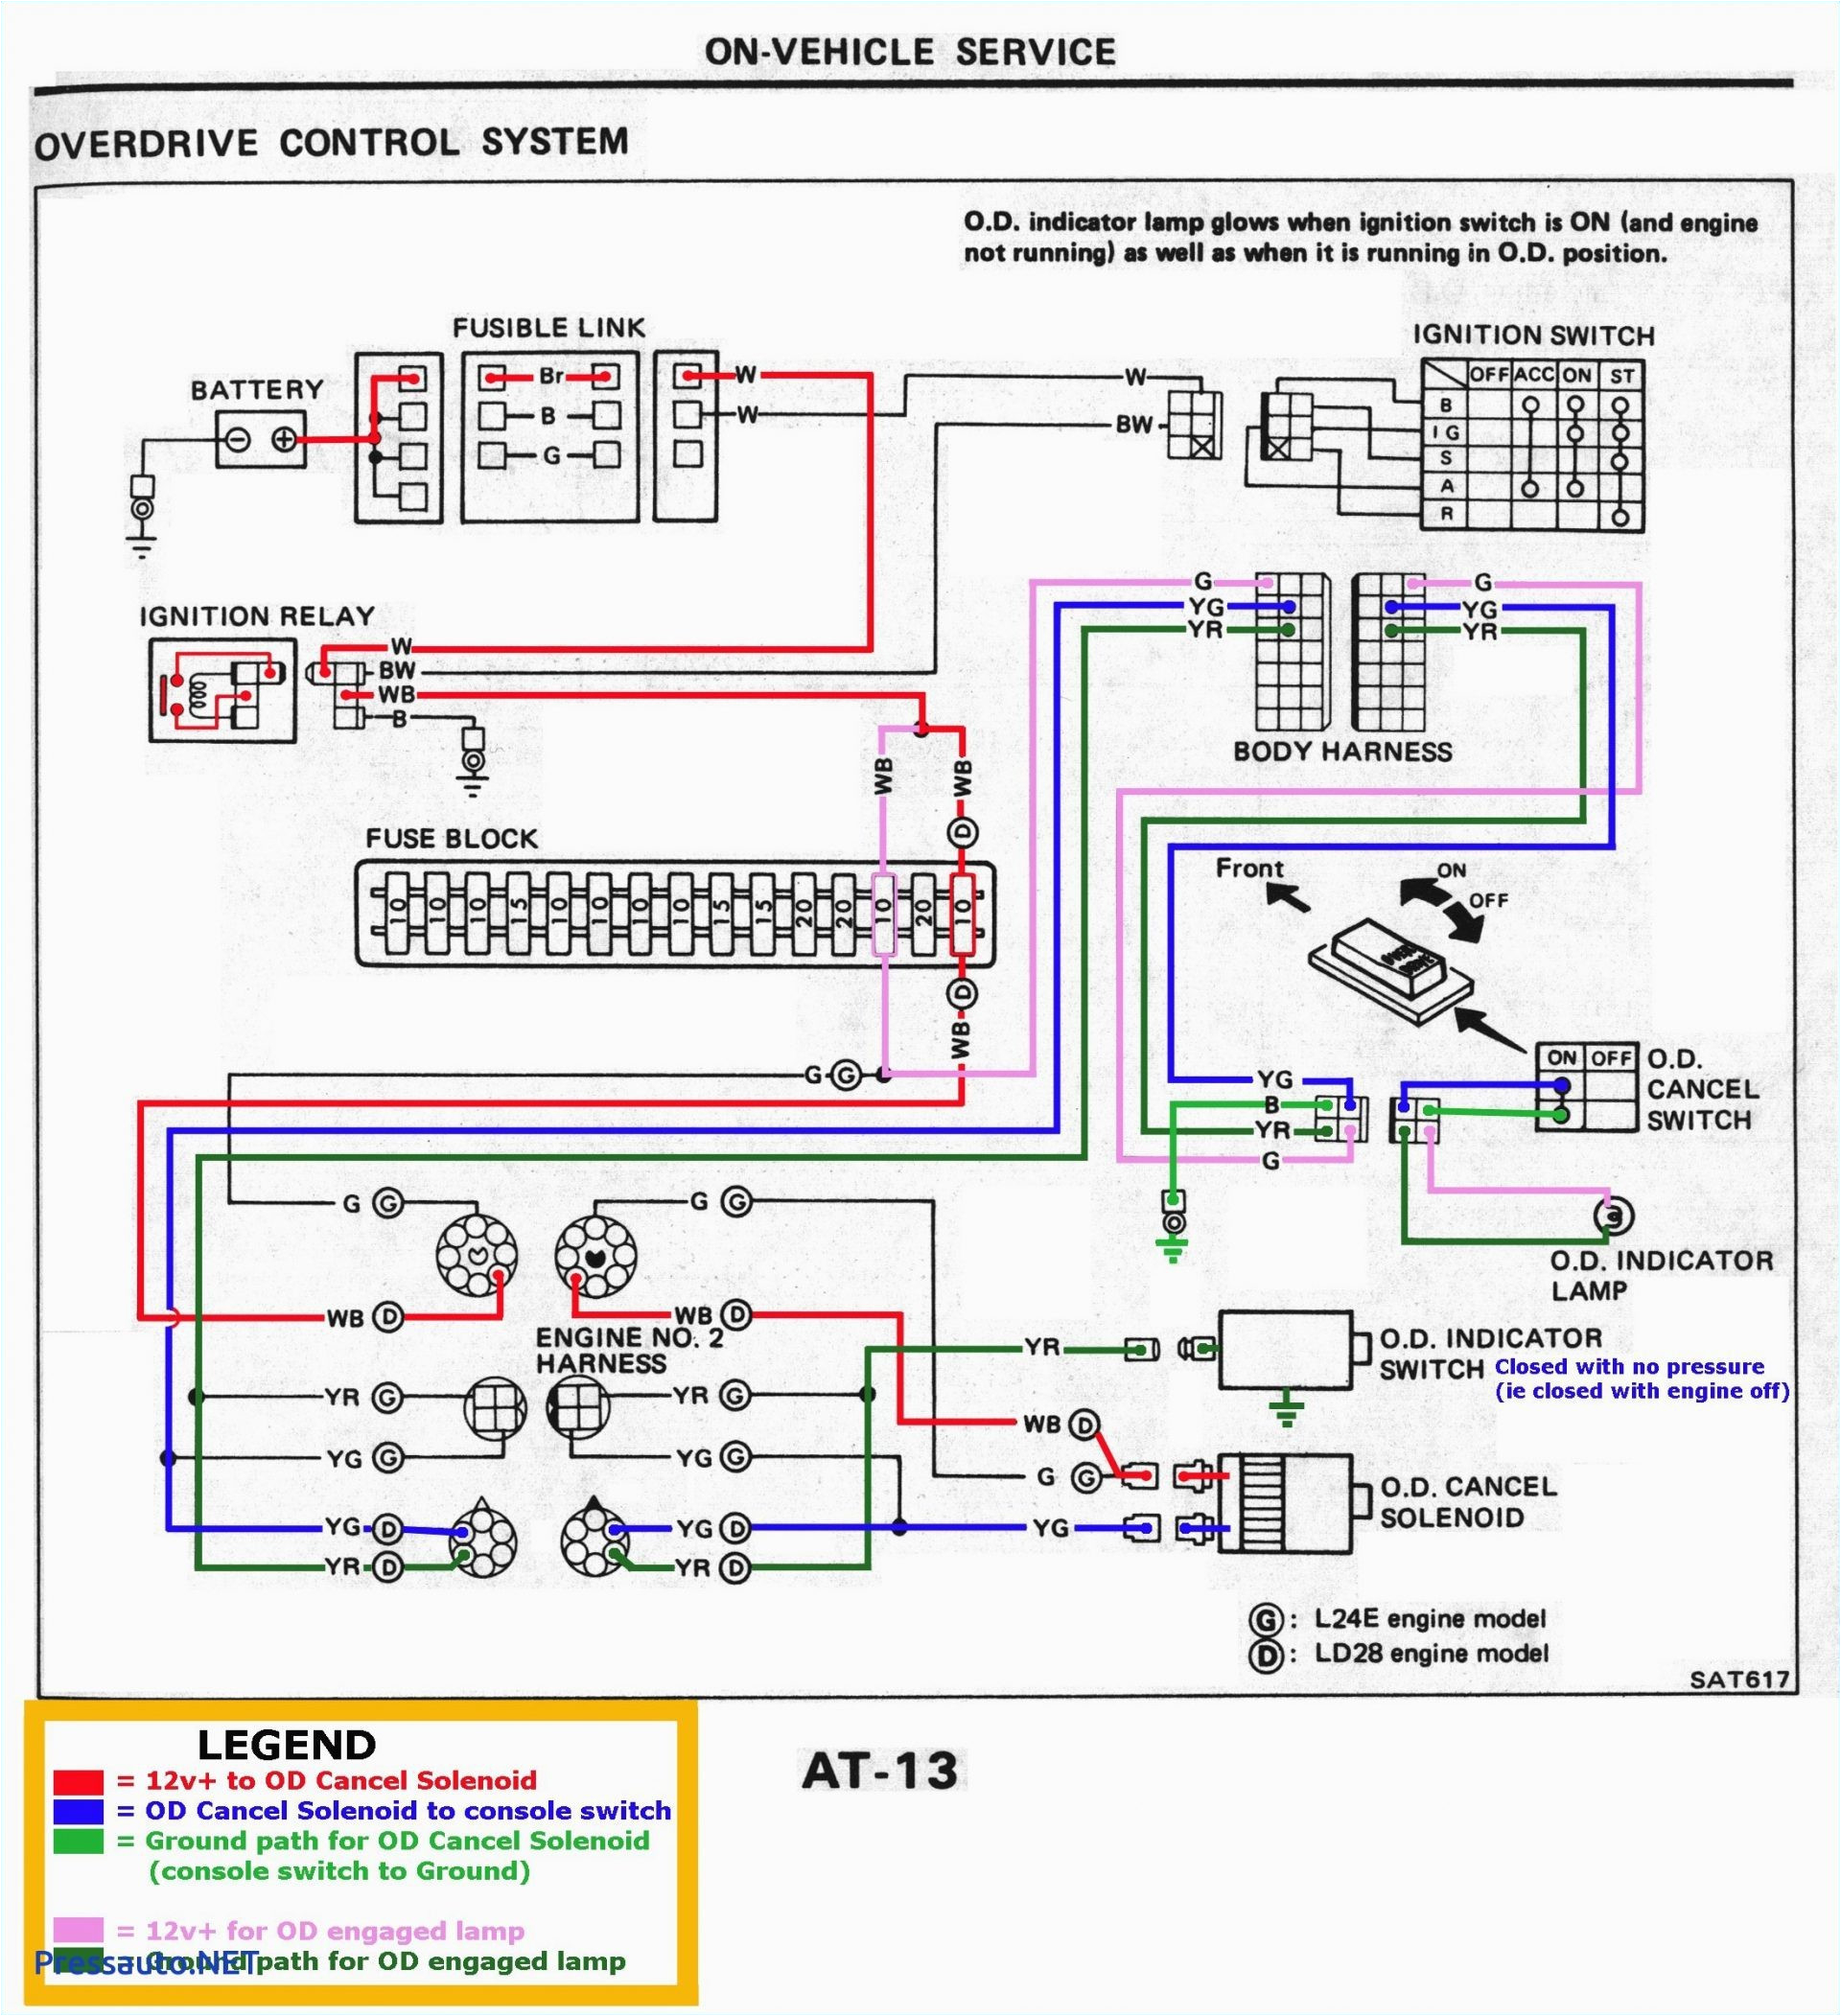 gmc 09 2500 tail light wiring wiring diagram insidergmc 2009 2500 tail light wiring just wiring